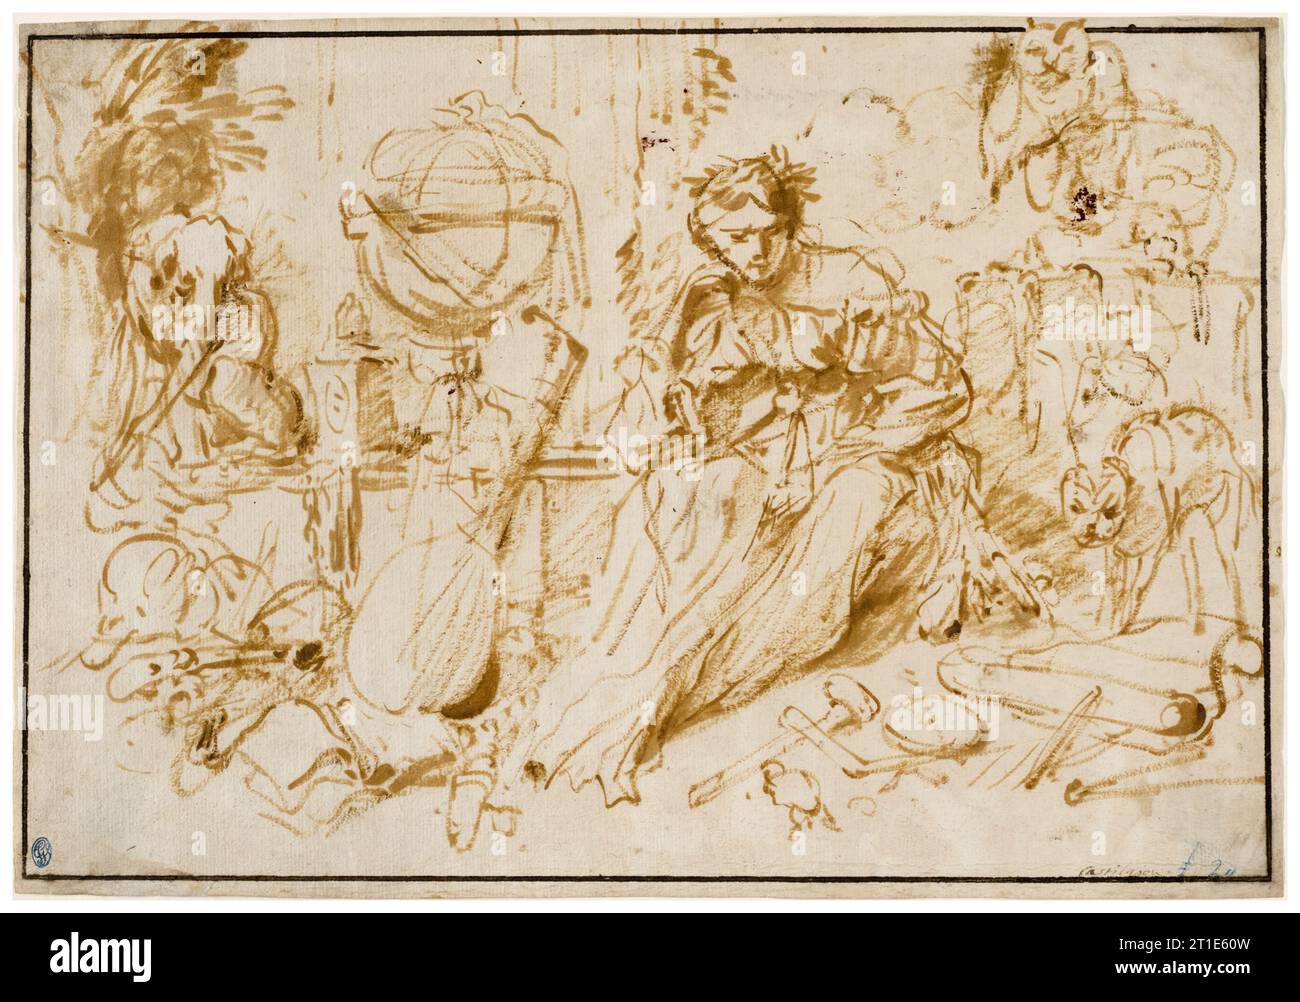 Giovanni Benedetto Castiglione dit il Grechetto, Melancholia, dessinant à la peinture à l'huile et au pinceau sur papier beige, après 1660 Banque D'Images